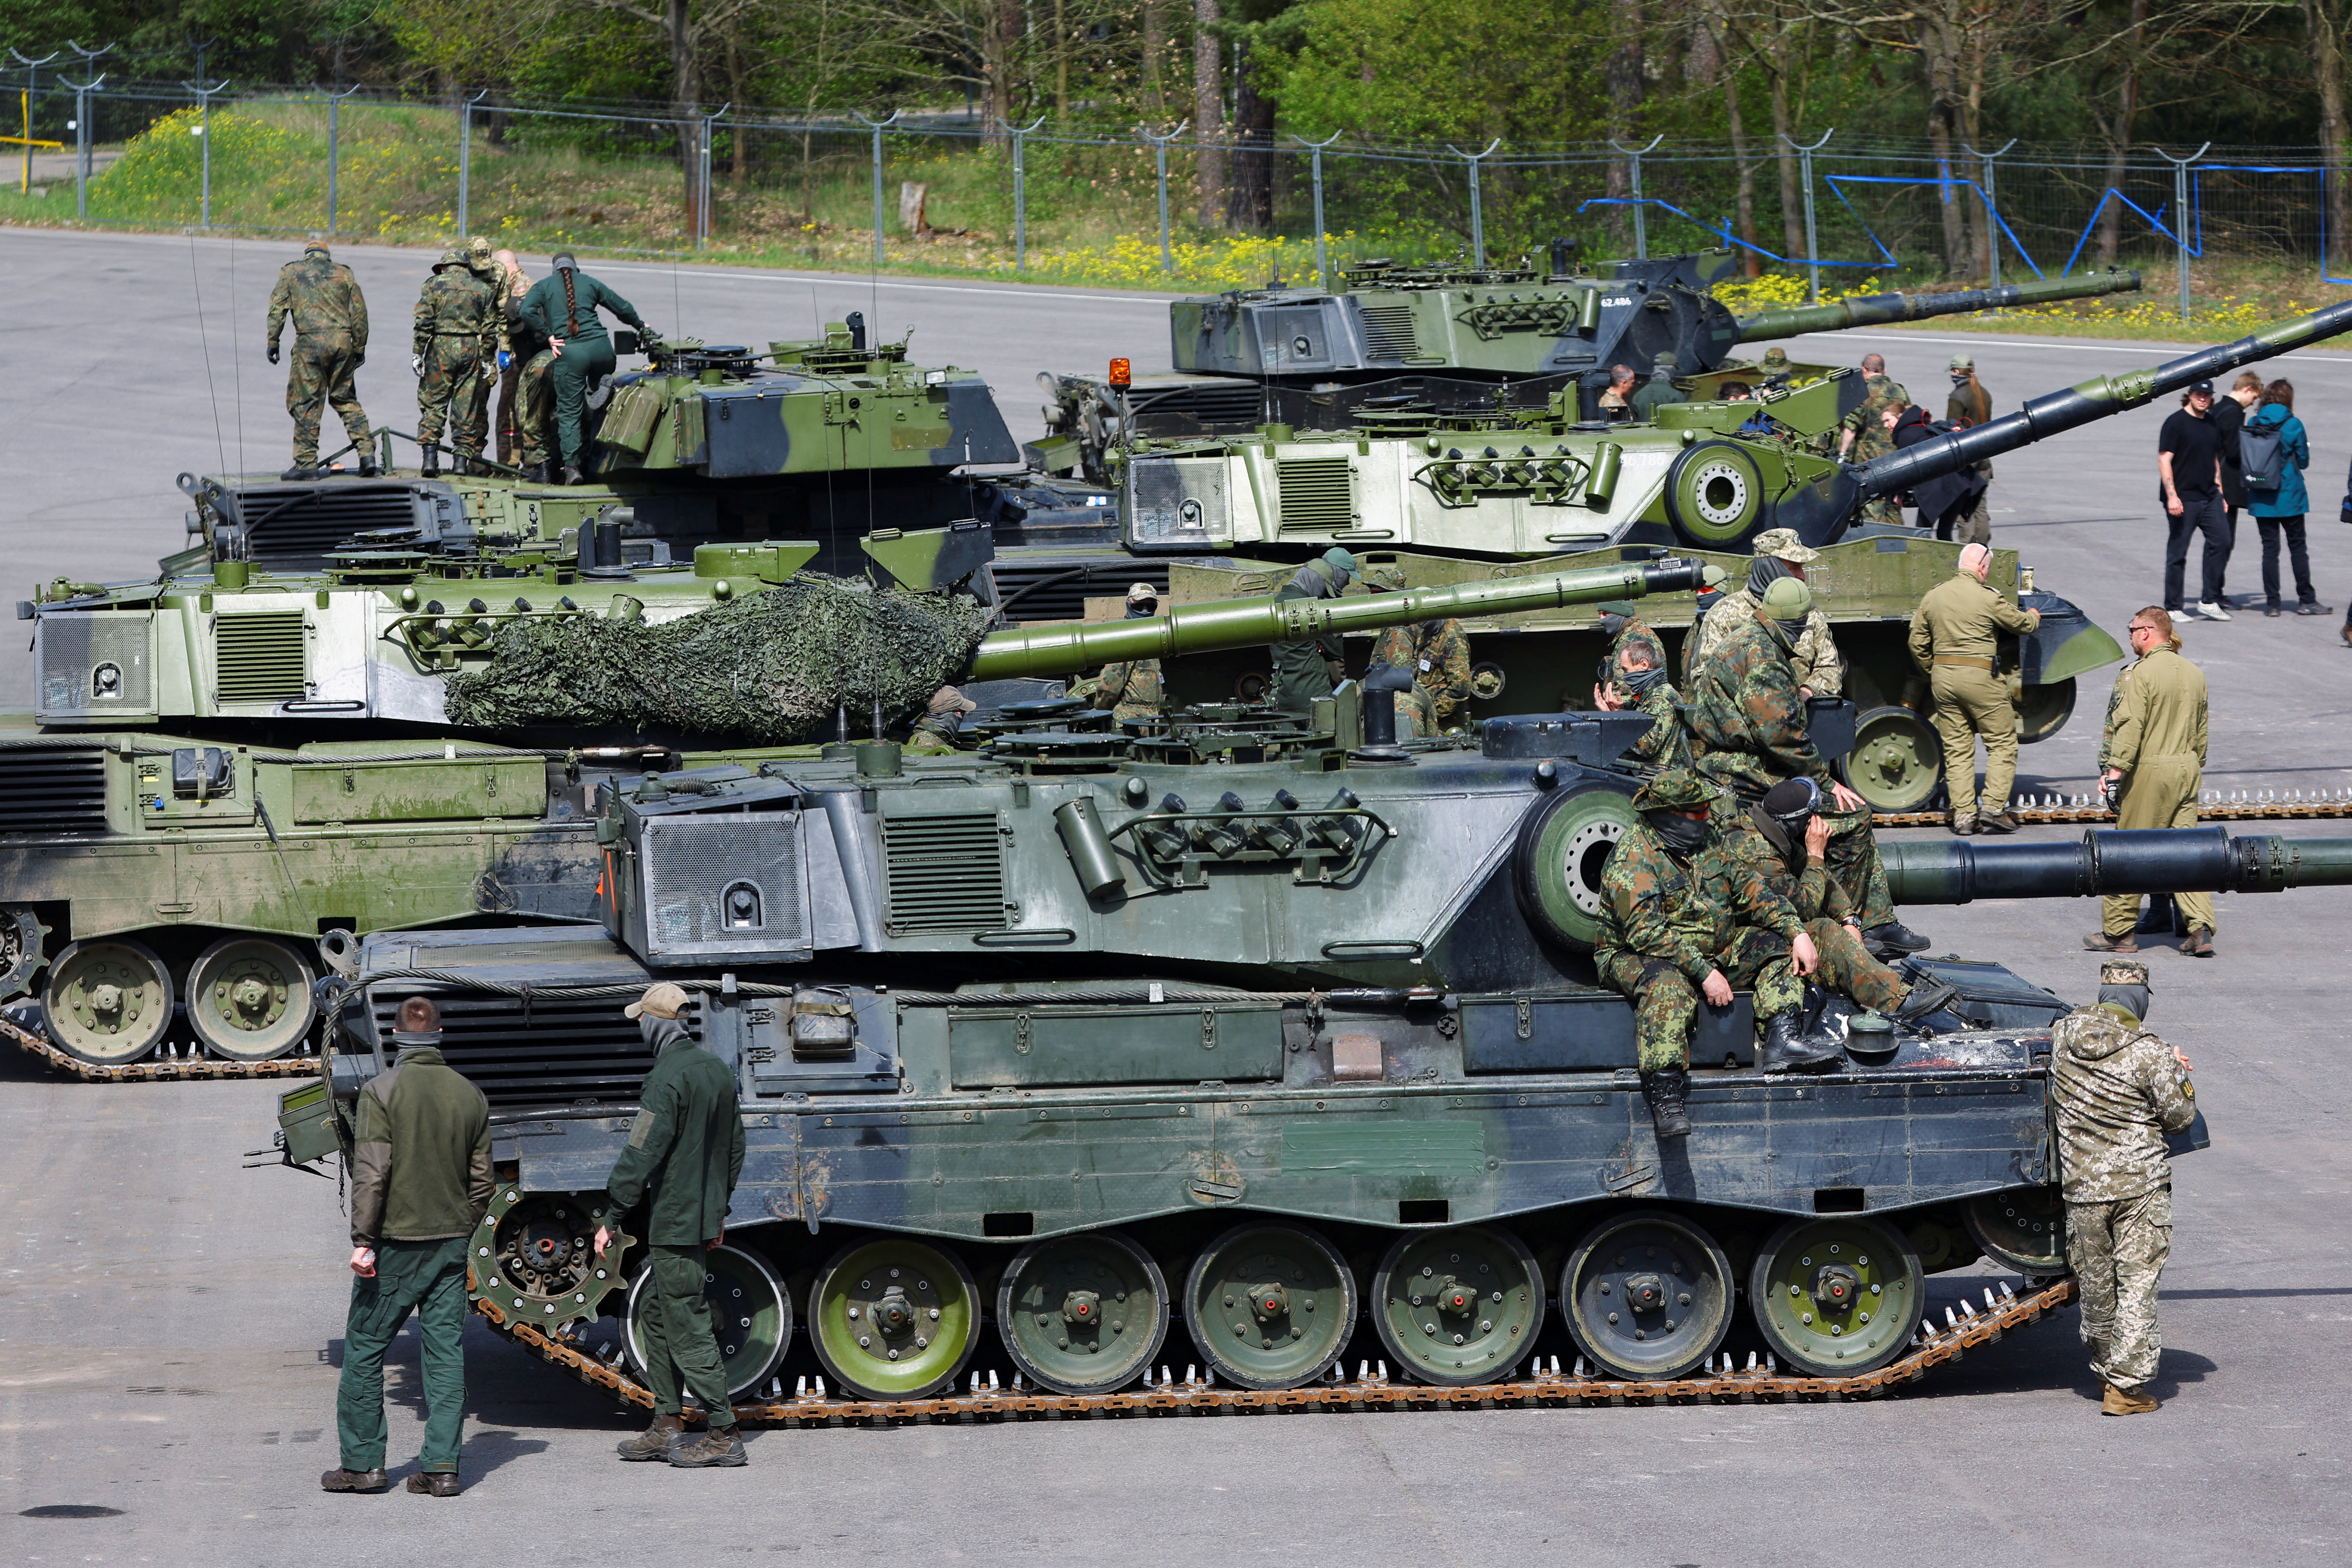 Los soldados ucranianos aparecen en un tanque Leopard 1A5, en la base Bundeswehr del ejército alemán, parte de la Misión de Asistencia Militar de la UE en apoyo de Ucrania (EUMAM Ucrania) en Klietz, Alemania. REUTERS/Fabrizio Bensch